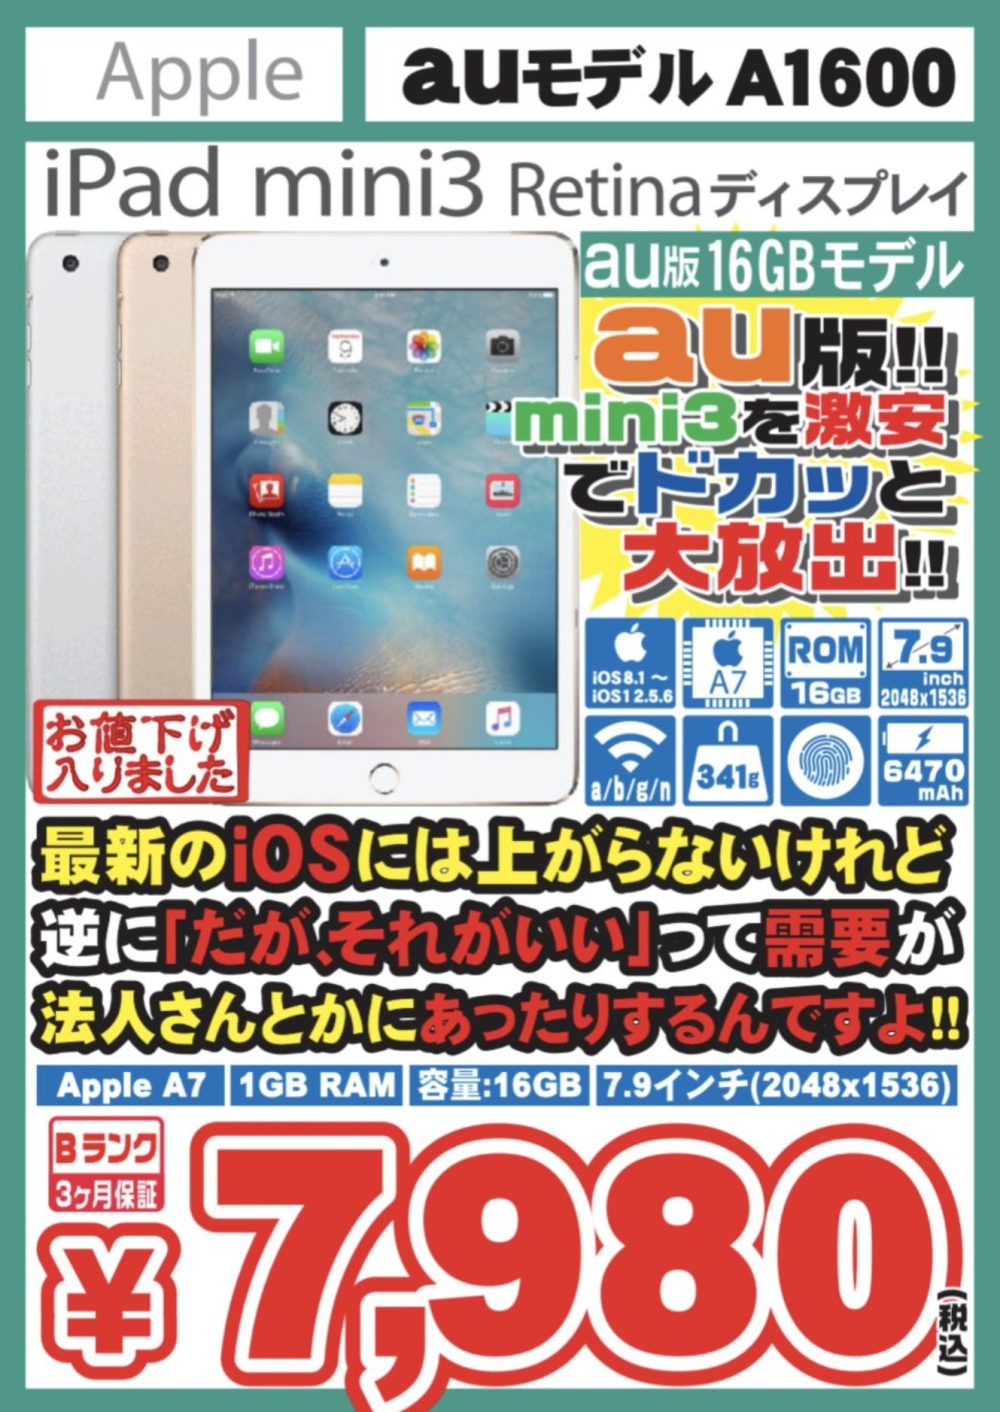 セルラー版の中古iPad mini 3美品が7,980円に値下げ！